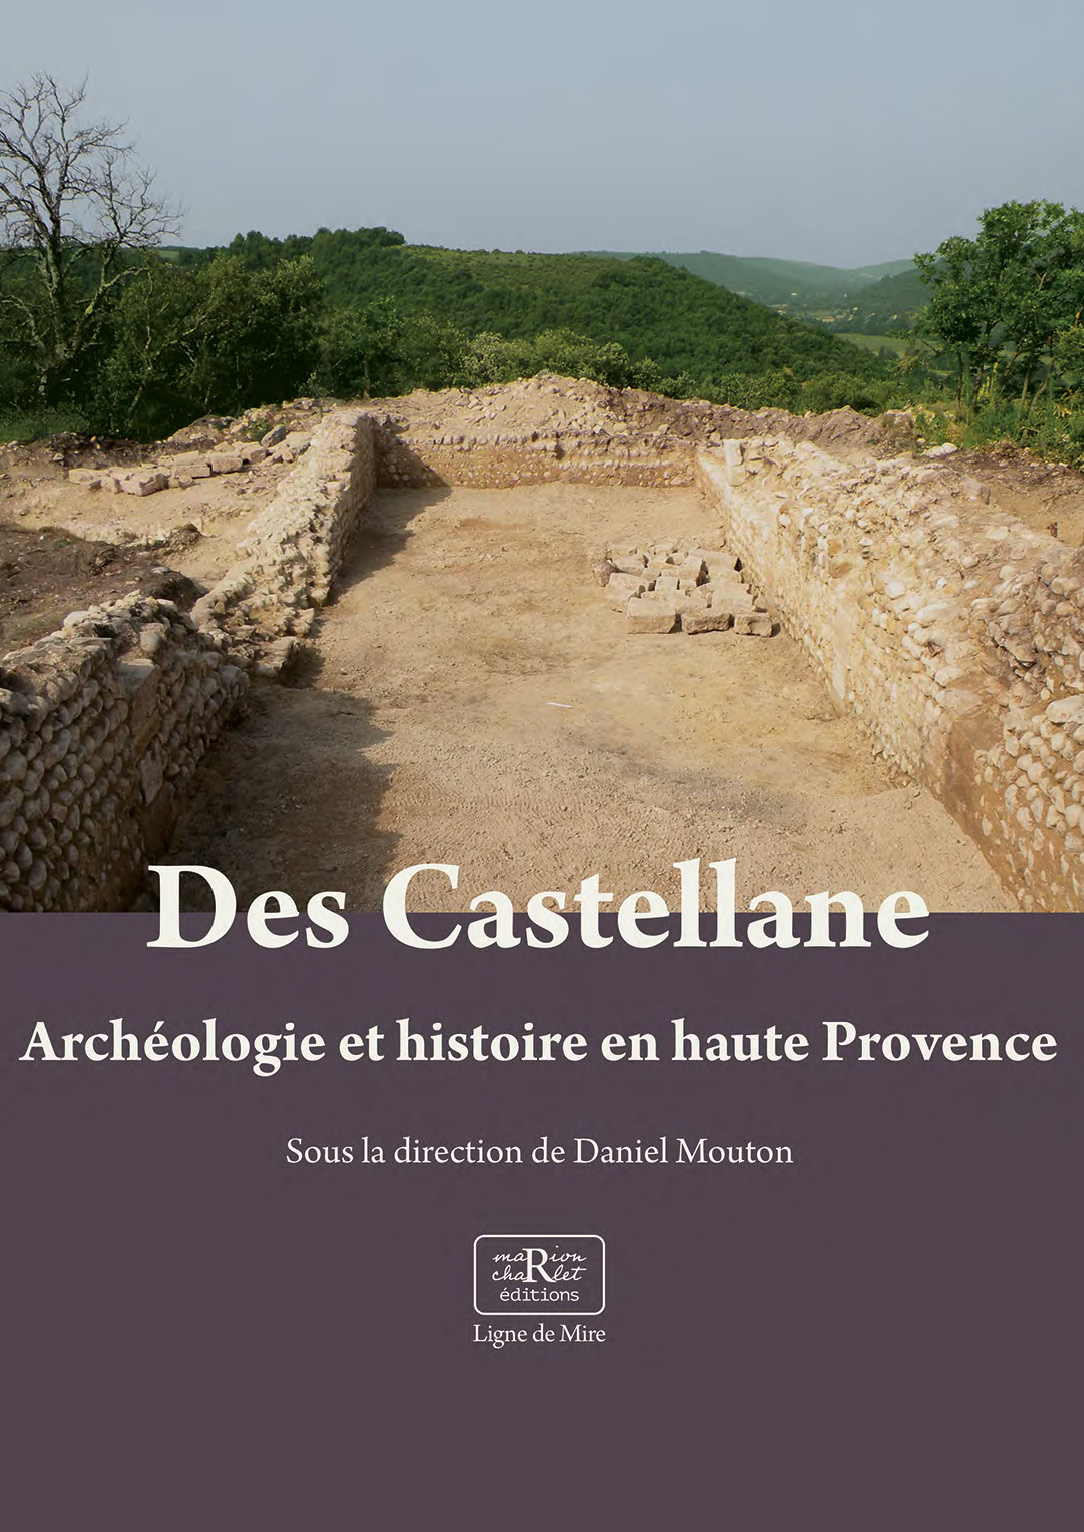 Des Castellane, Archéologie et histoire en haute Provence